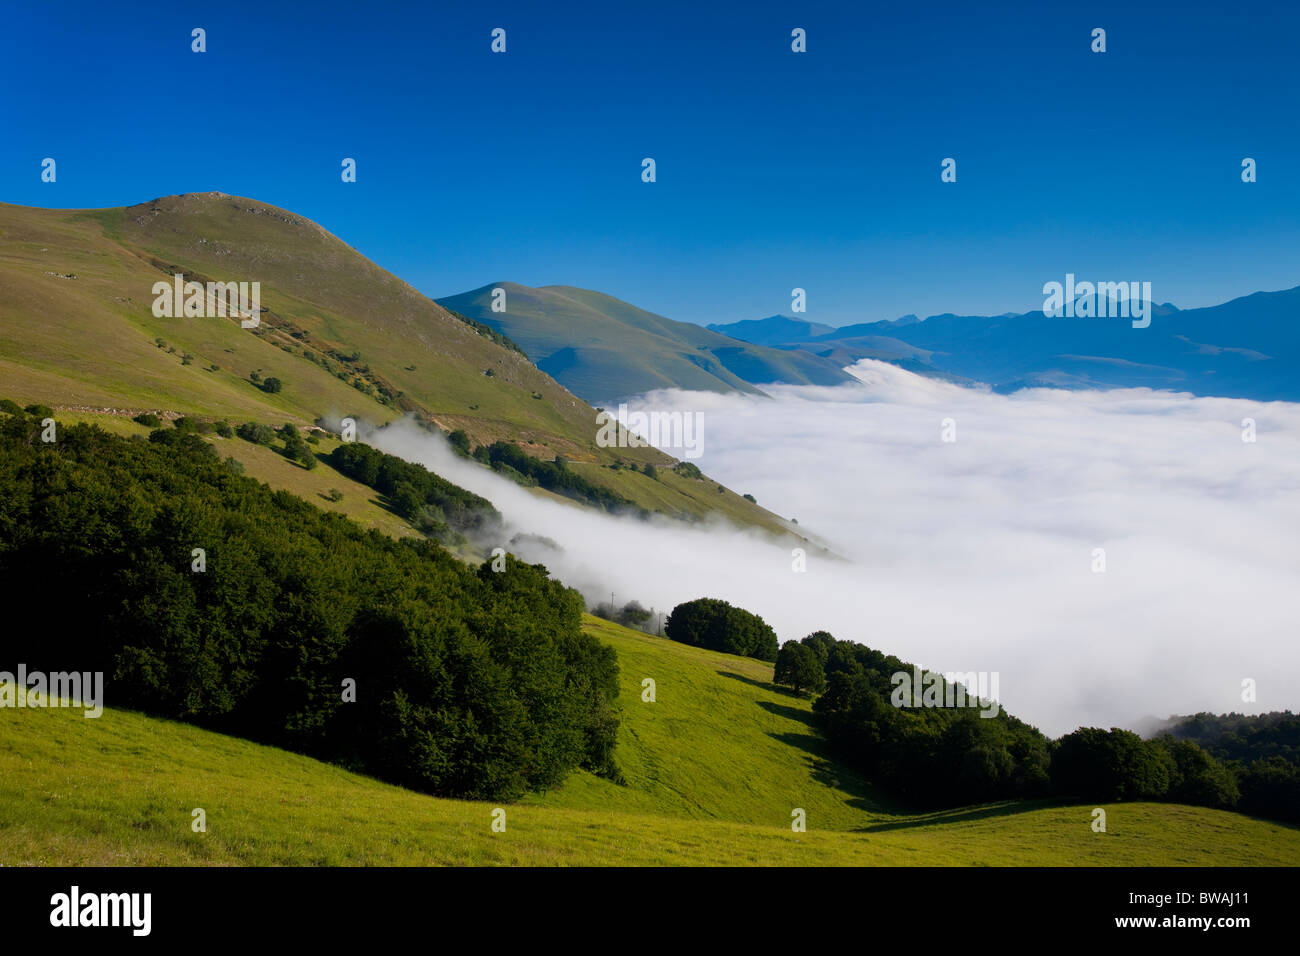 La nebbia la nebbia si blocca nel Piano Grande, parte del Parco Nazionale dei Monti Sibillini, Umbria Italia Foto Stock